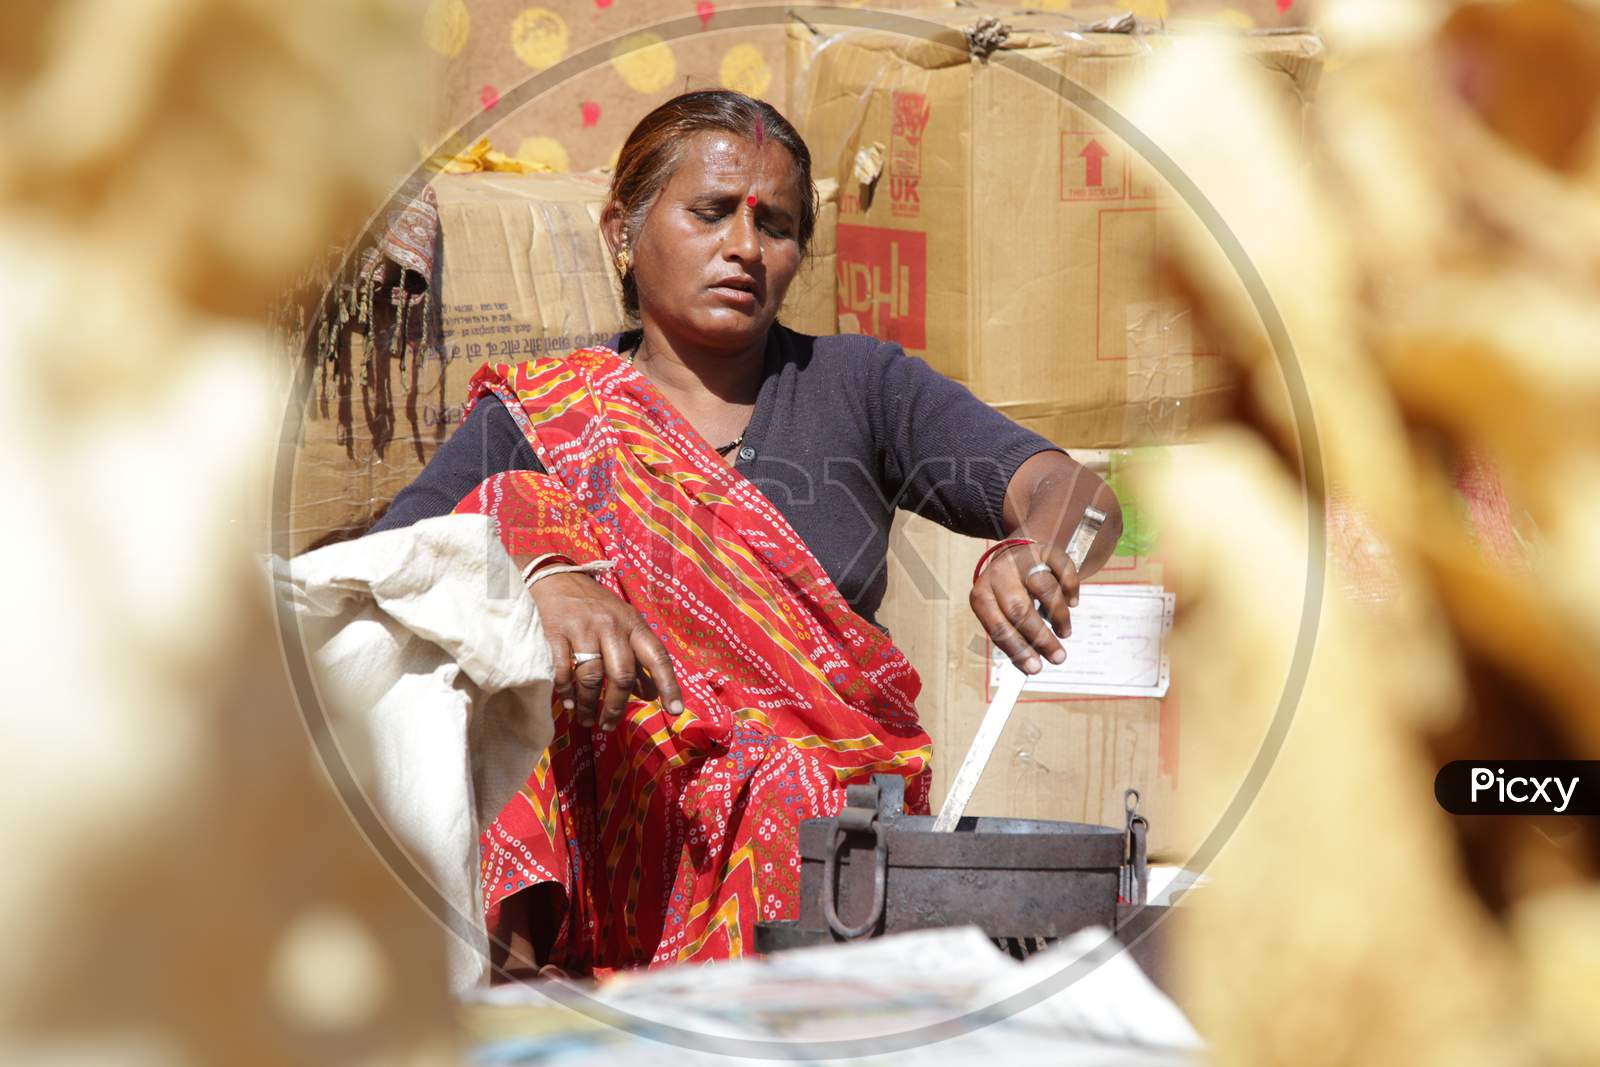 Rajasthani Woman Making Roti's in Shilpgram Fair, Udaipur, Rajasthan